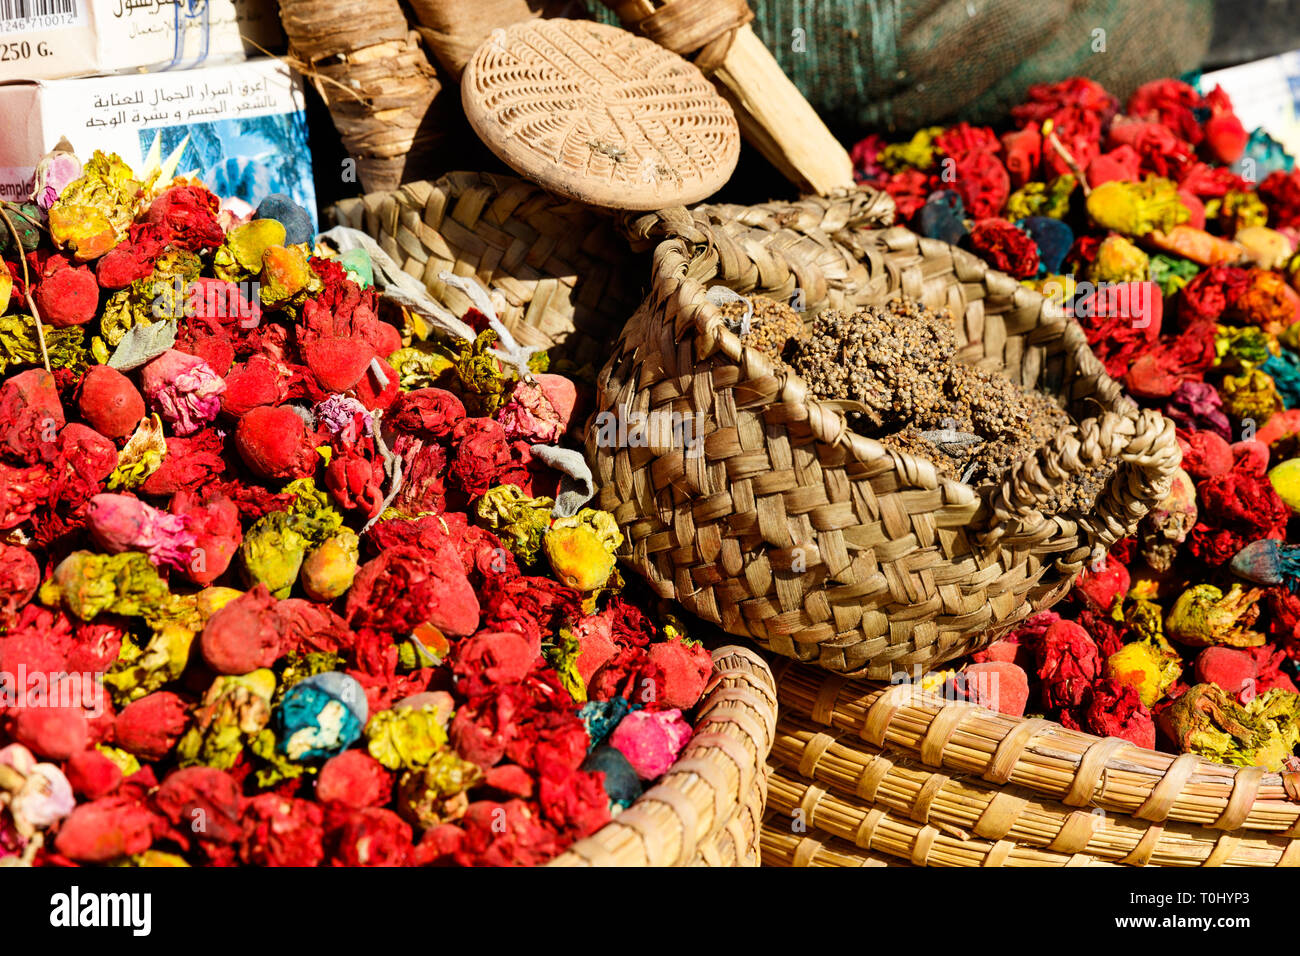 Coloridas flores y especias de cocina local tradicional en medina bazar mercado en Marrakech, Marruecos Foto de stock